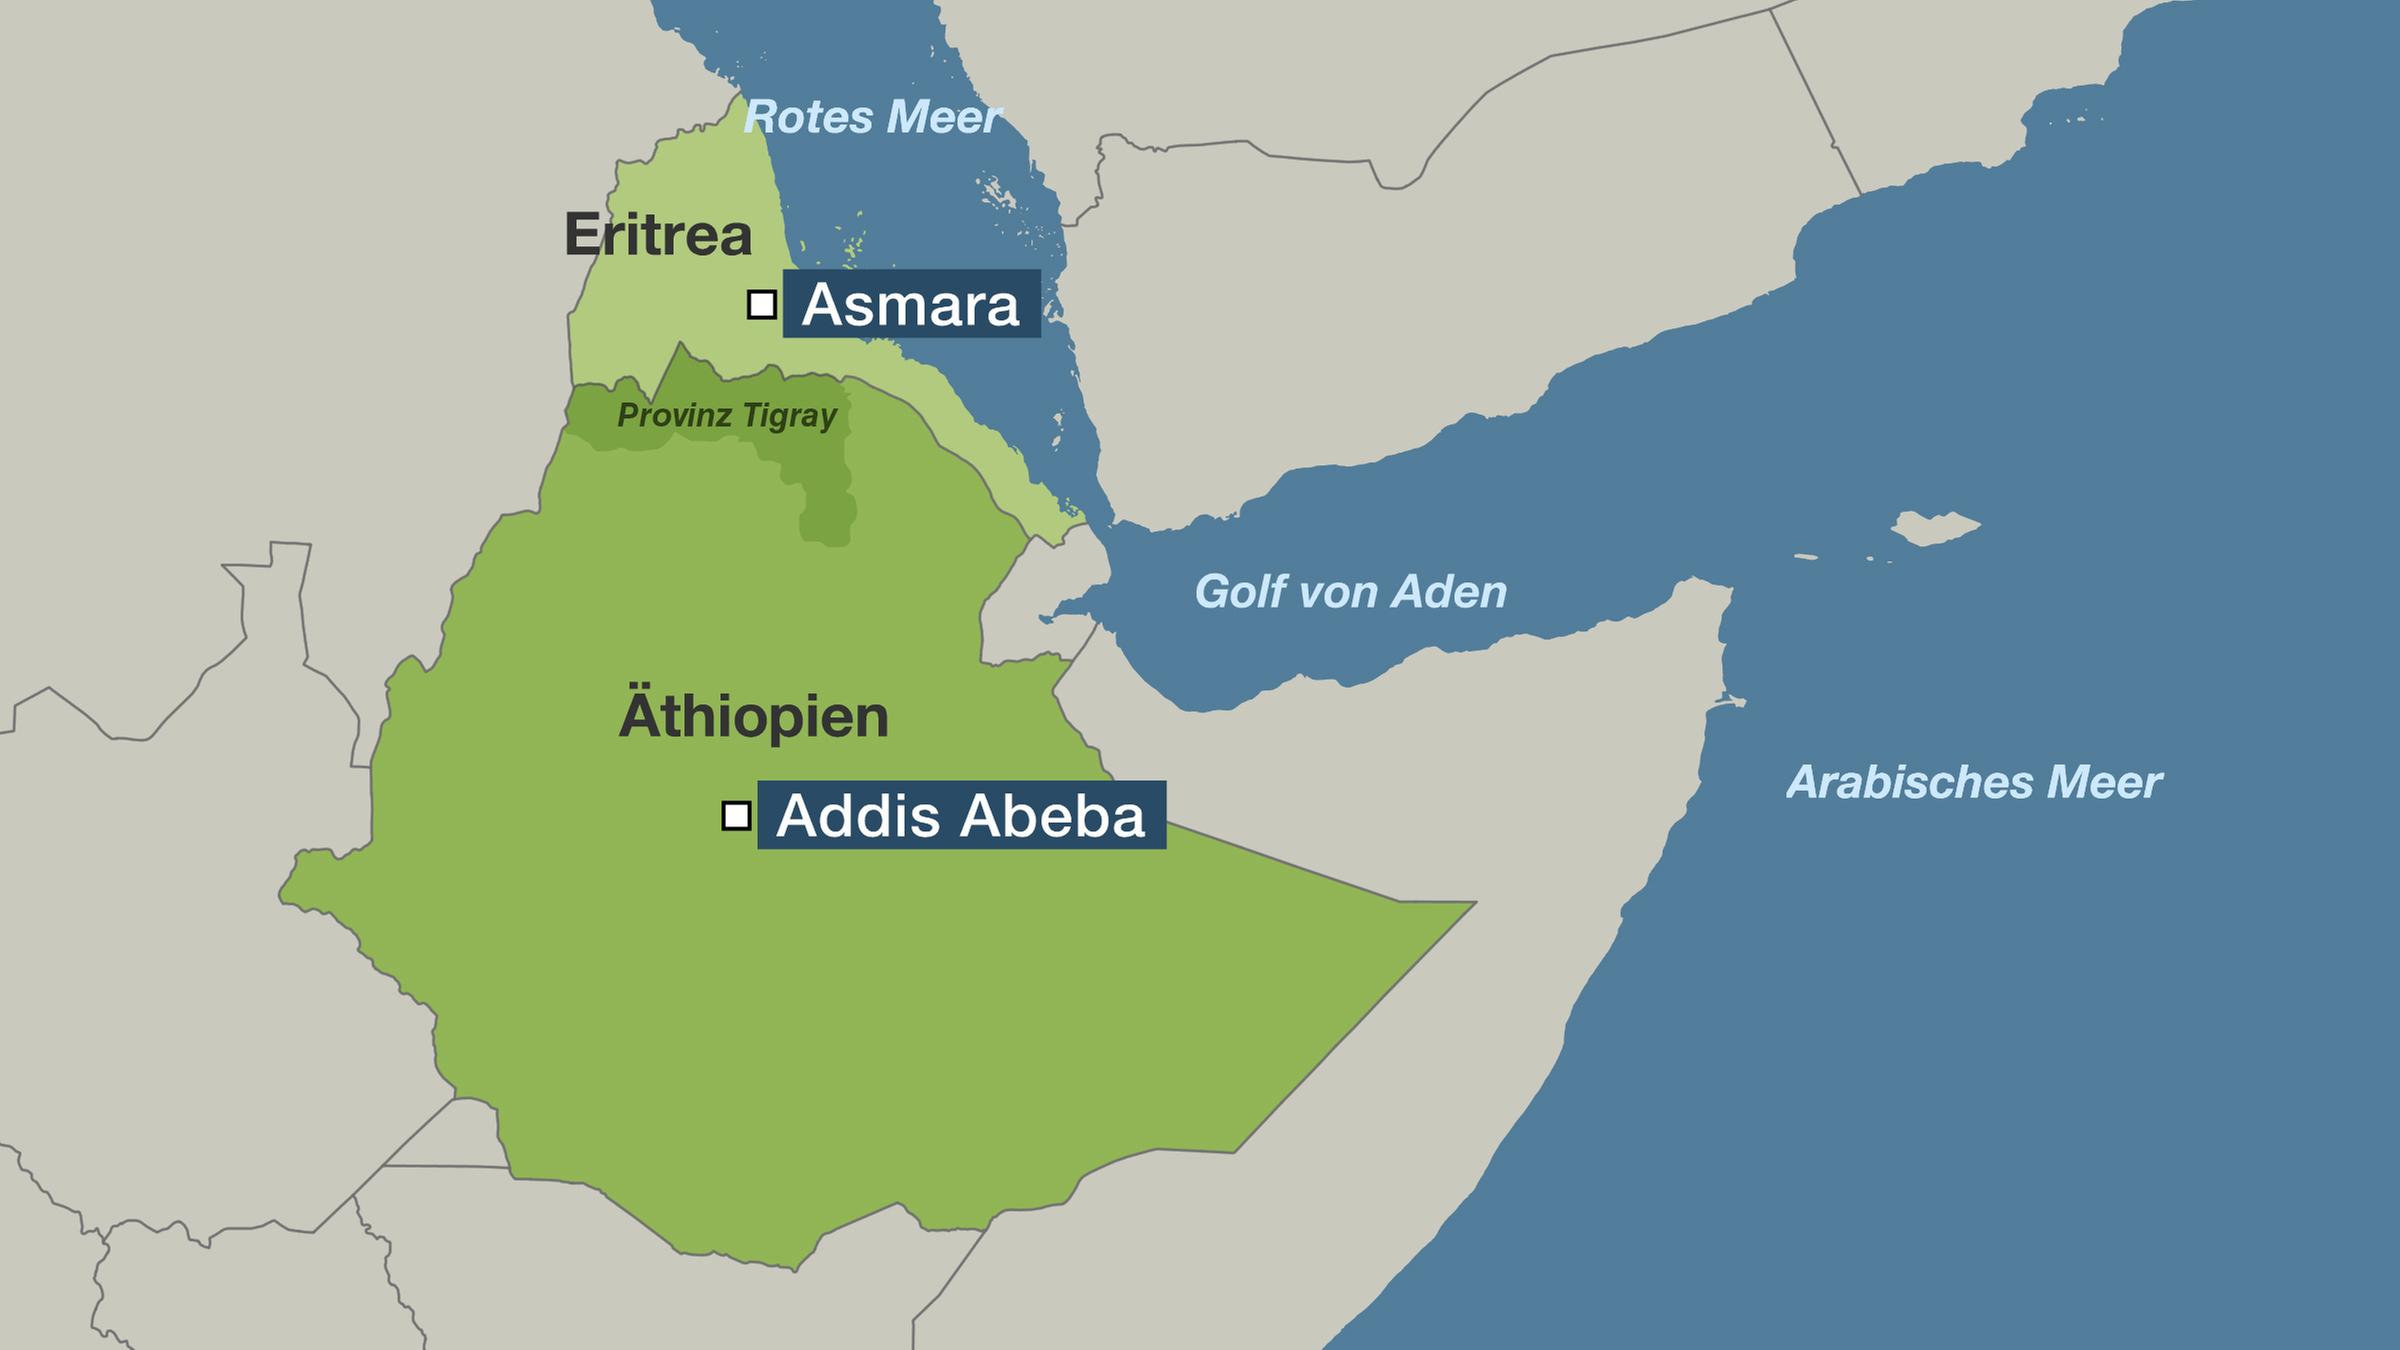 Karte von Eritrea und Äthiopien